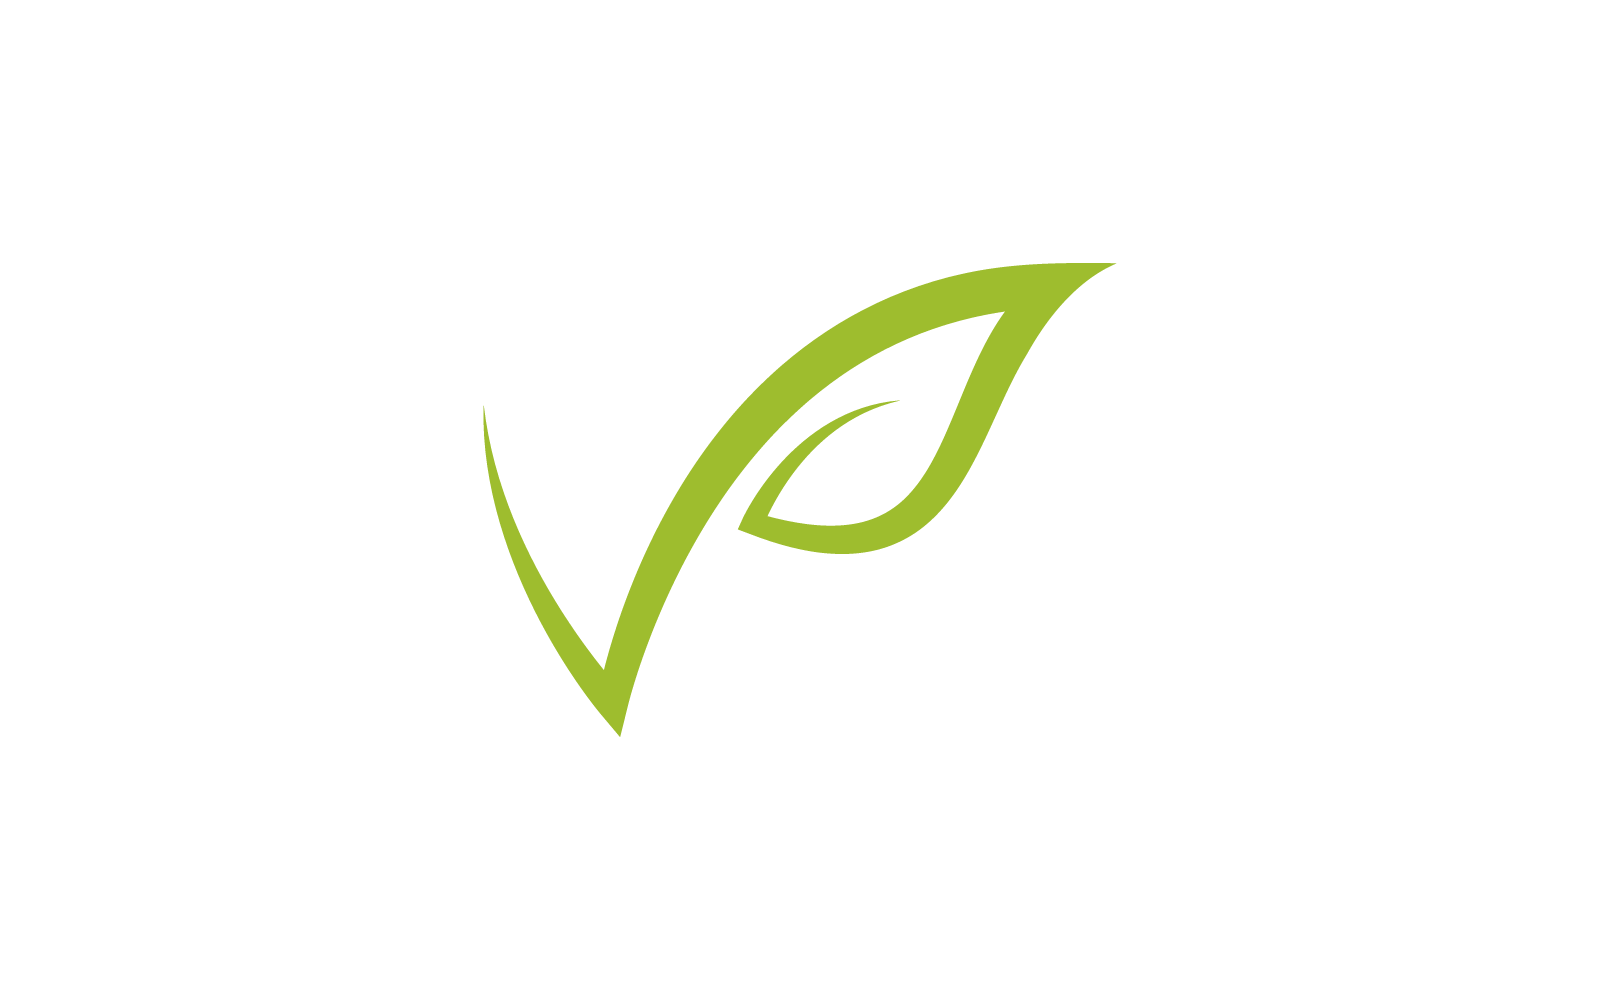 Green leaf nature logo design illustration Logo Template